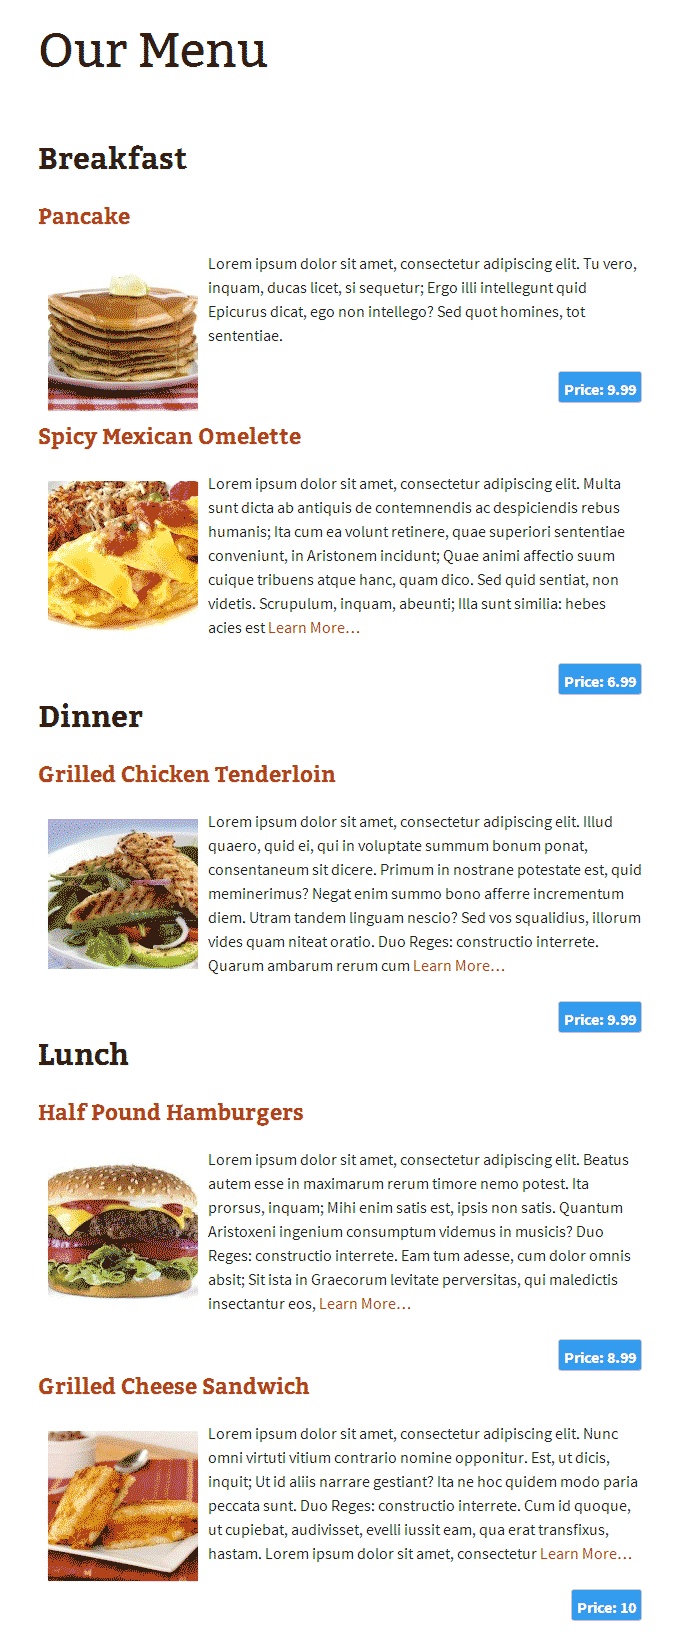 Restaurant menu displayed in simple list.